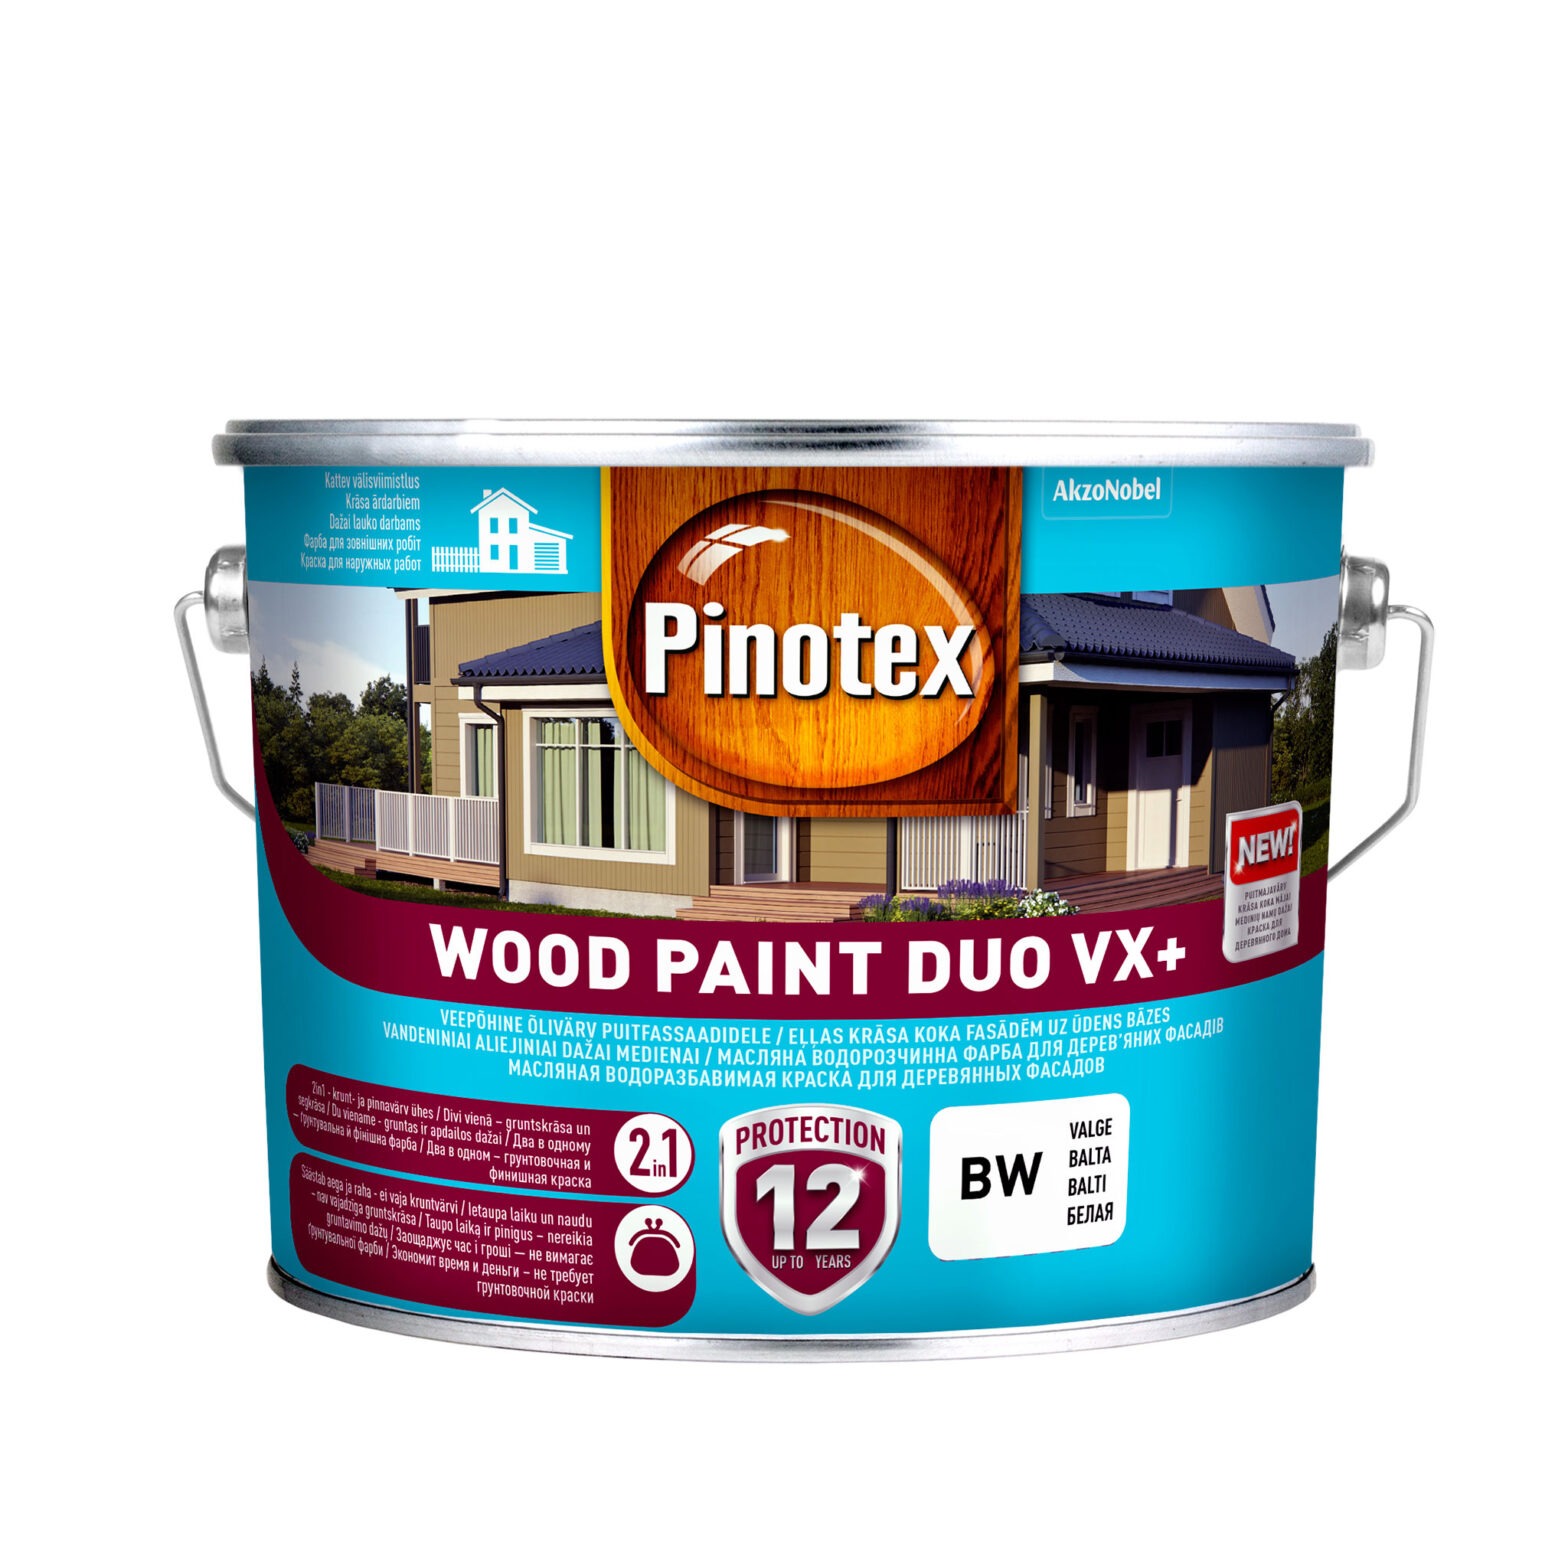 PINOTEX WOOD PAINT DUO VX+ BW 2,5L